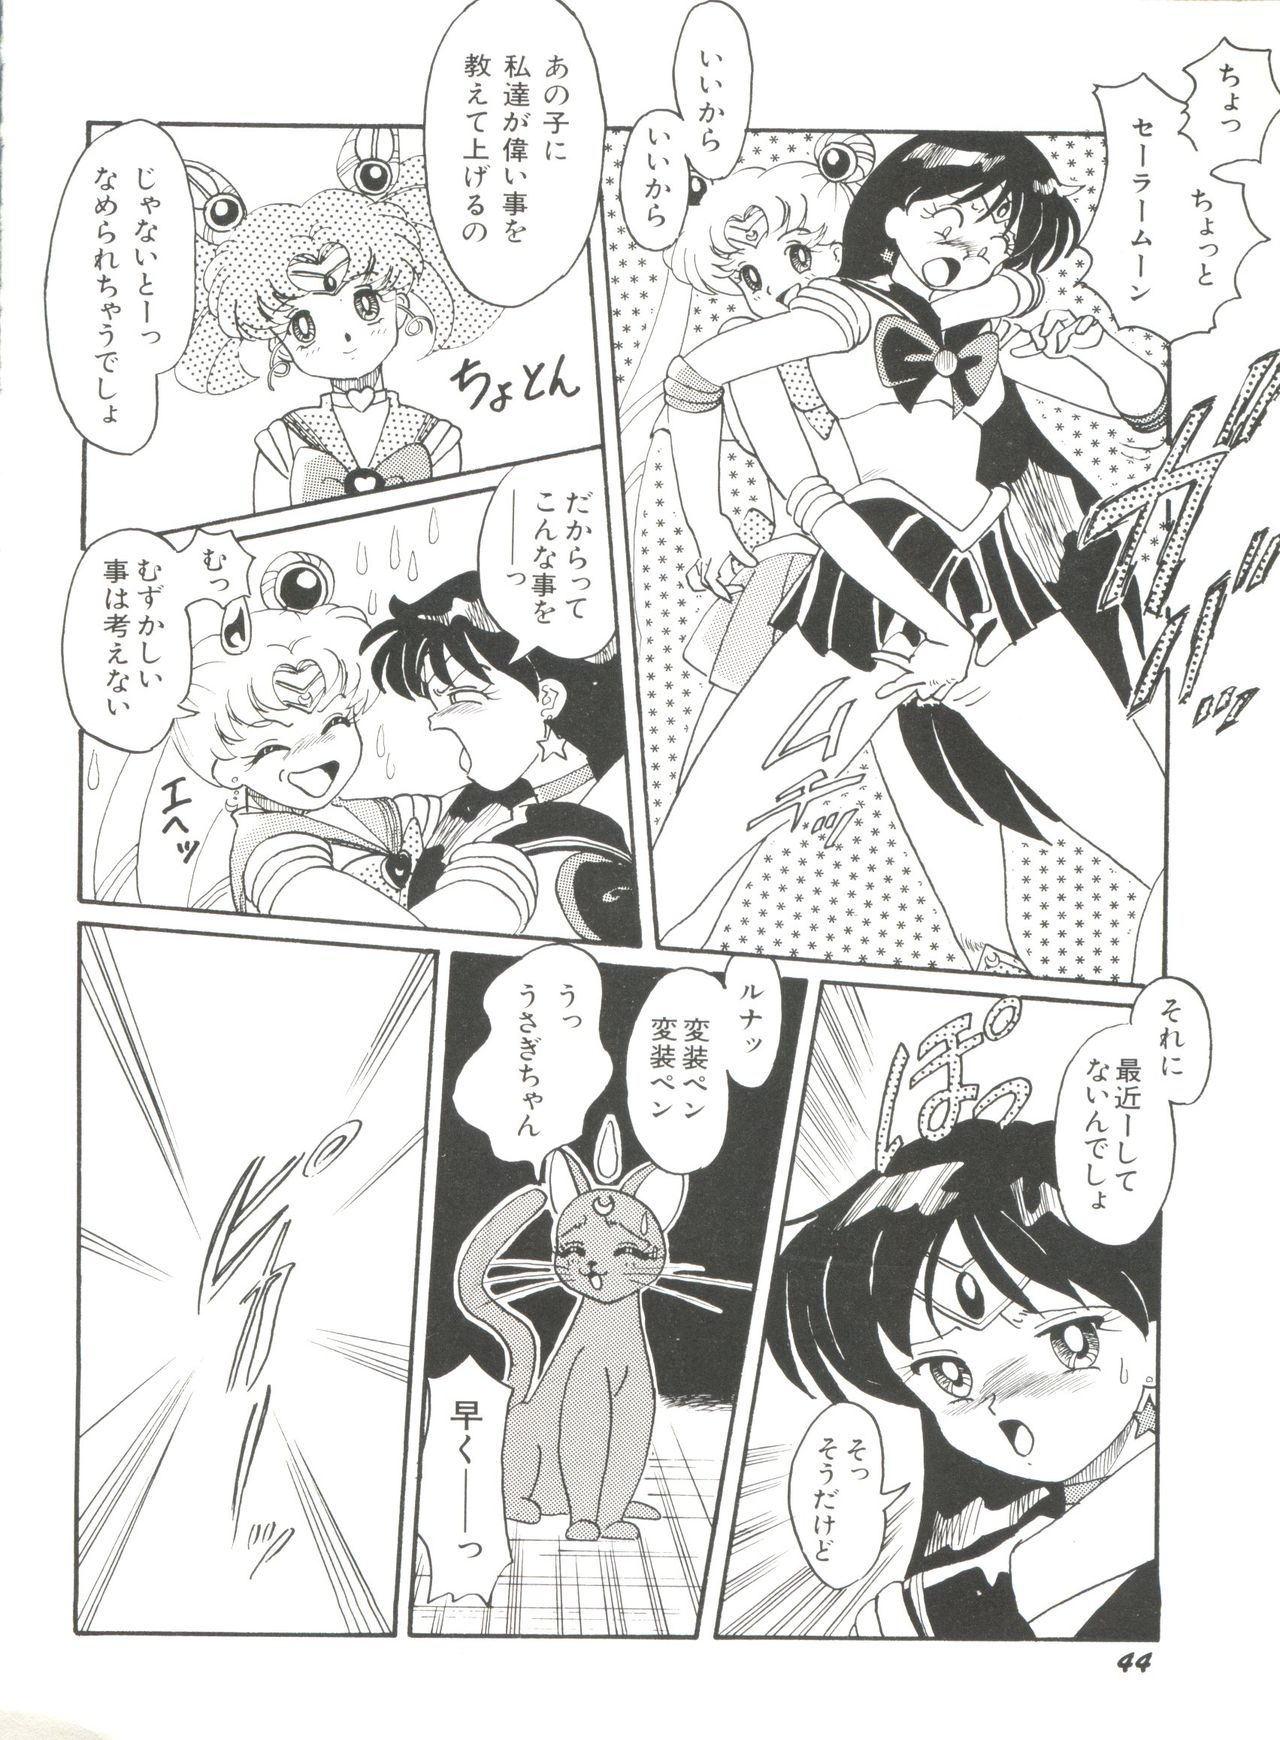 [Anthology] Bishoujo Doujinshi Anthology 18 - Moon Paradise 11 Tsuki no Rakuen (Bishoujo Senshi Sailor Moon) page 46 full